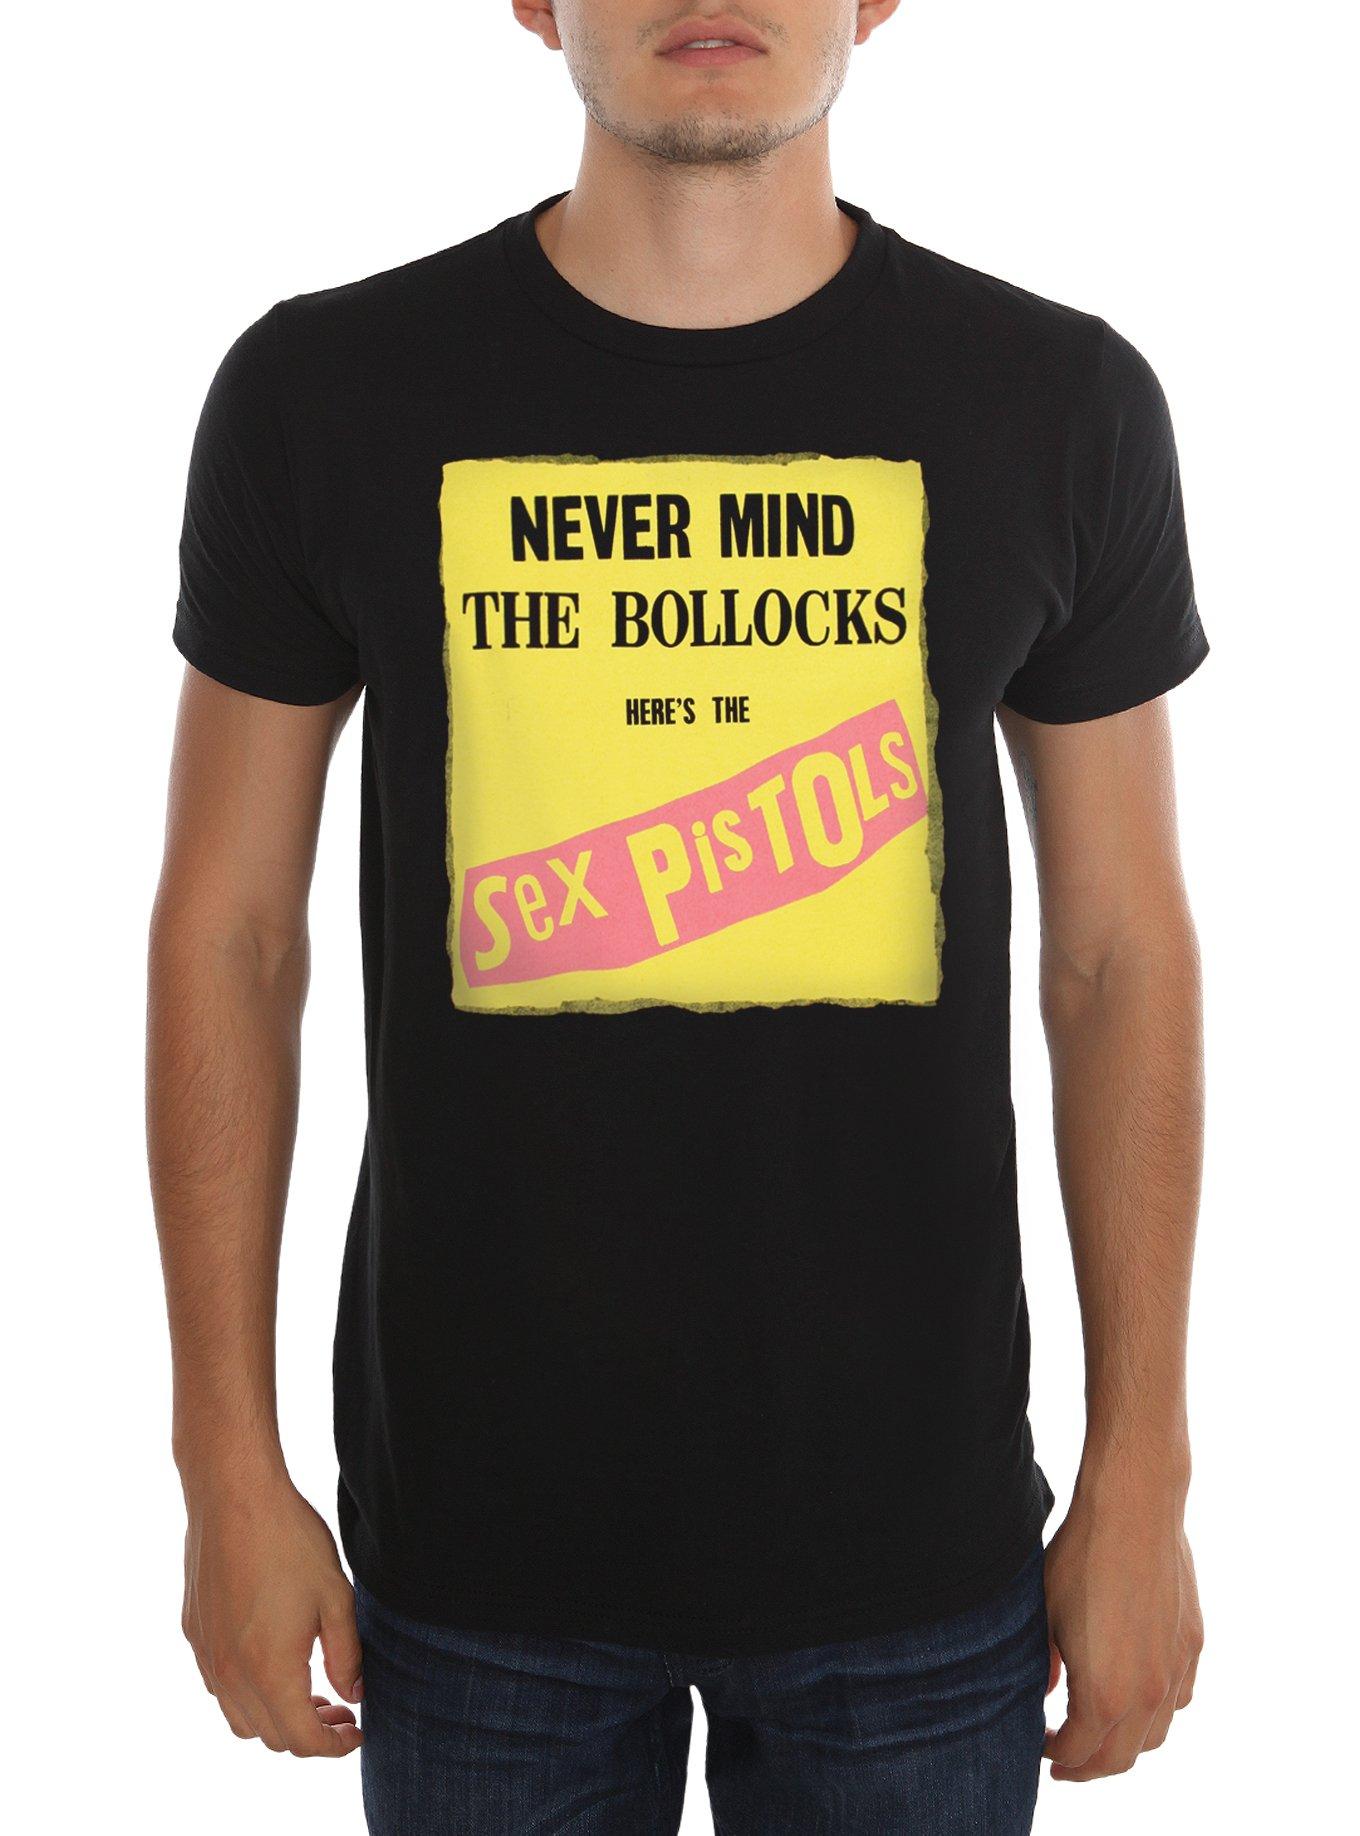 Sex Pistols Bollocks Cover T-Shirt, BLACK, hi-res